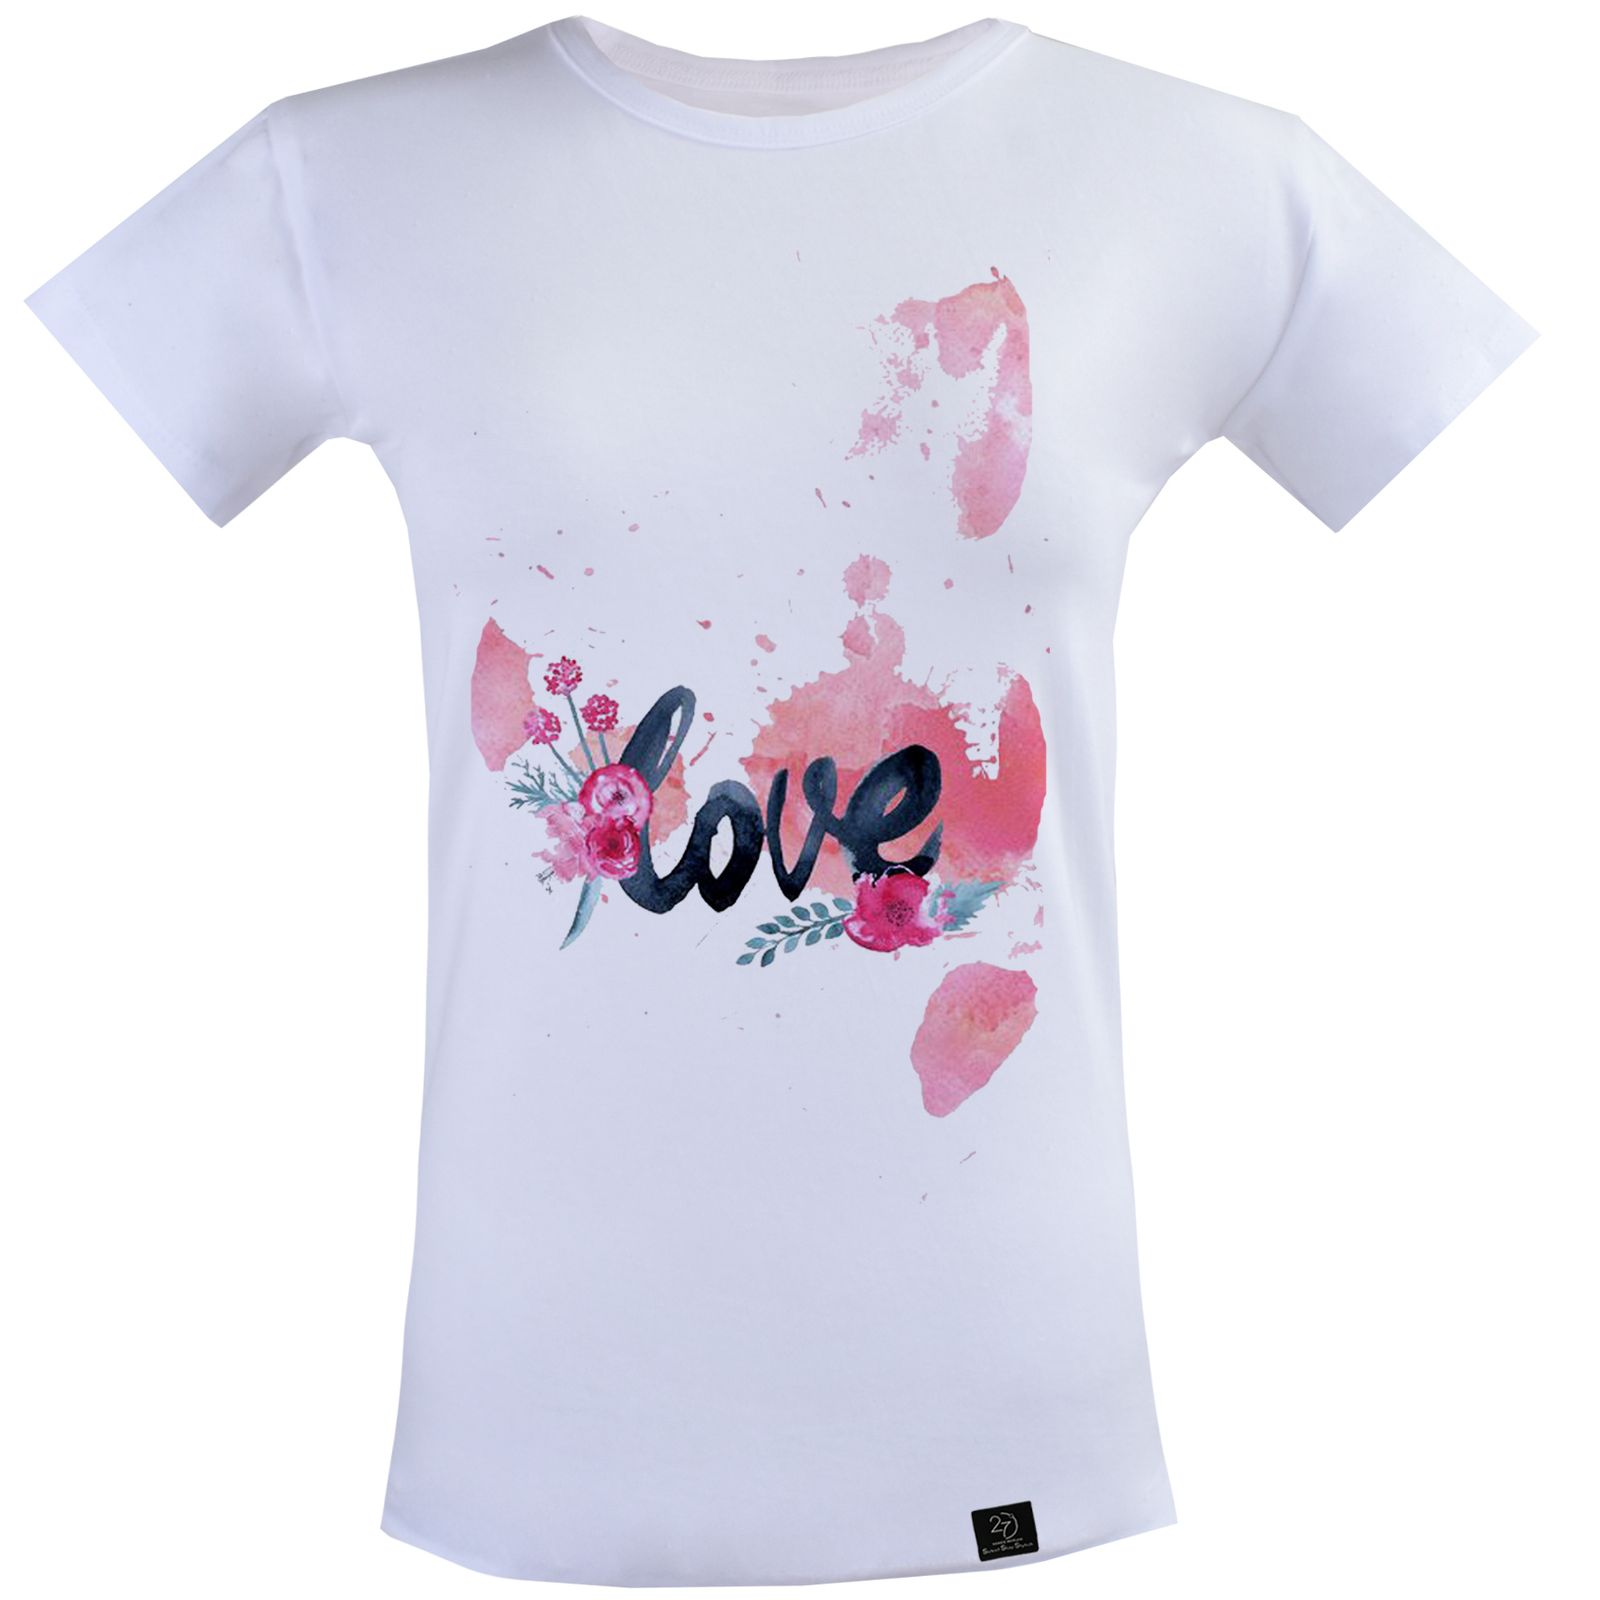 تی شرت آستین کوتاه زنانه 27 مدل LOVE کد P07 رنگ سفید -  - 2